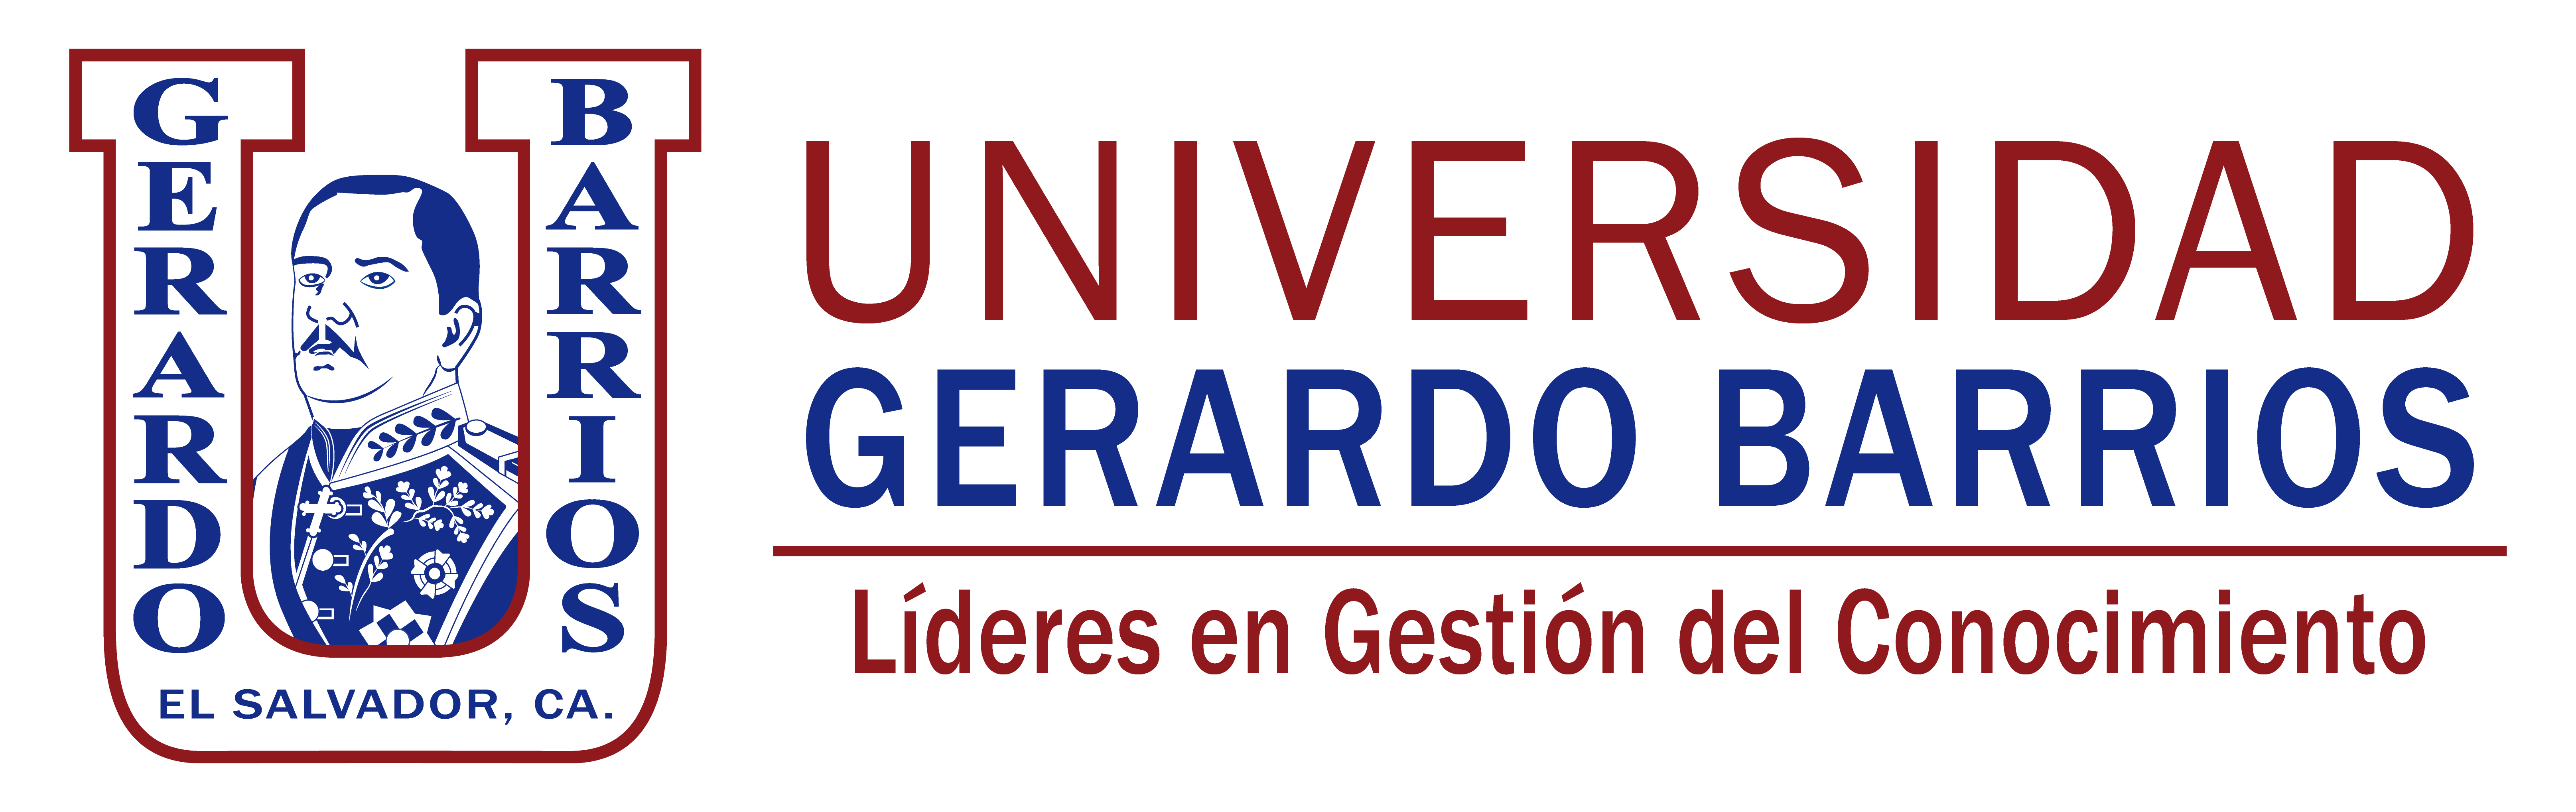 Universidad Gerardo Barrios - Líderes en Gestión del Conocimiento